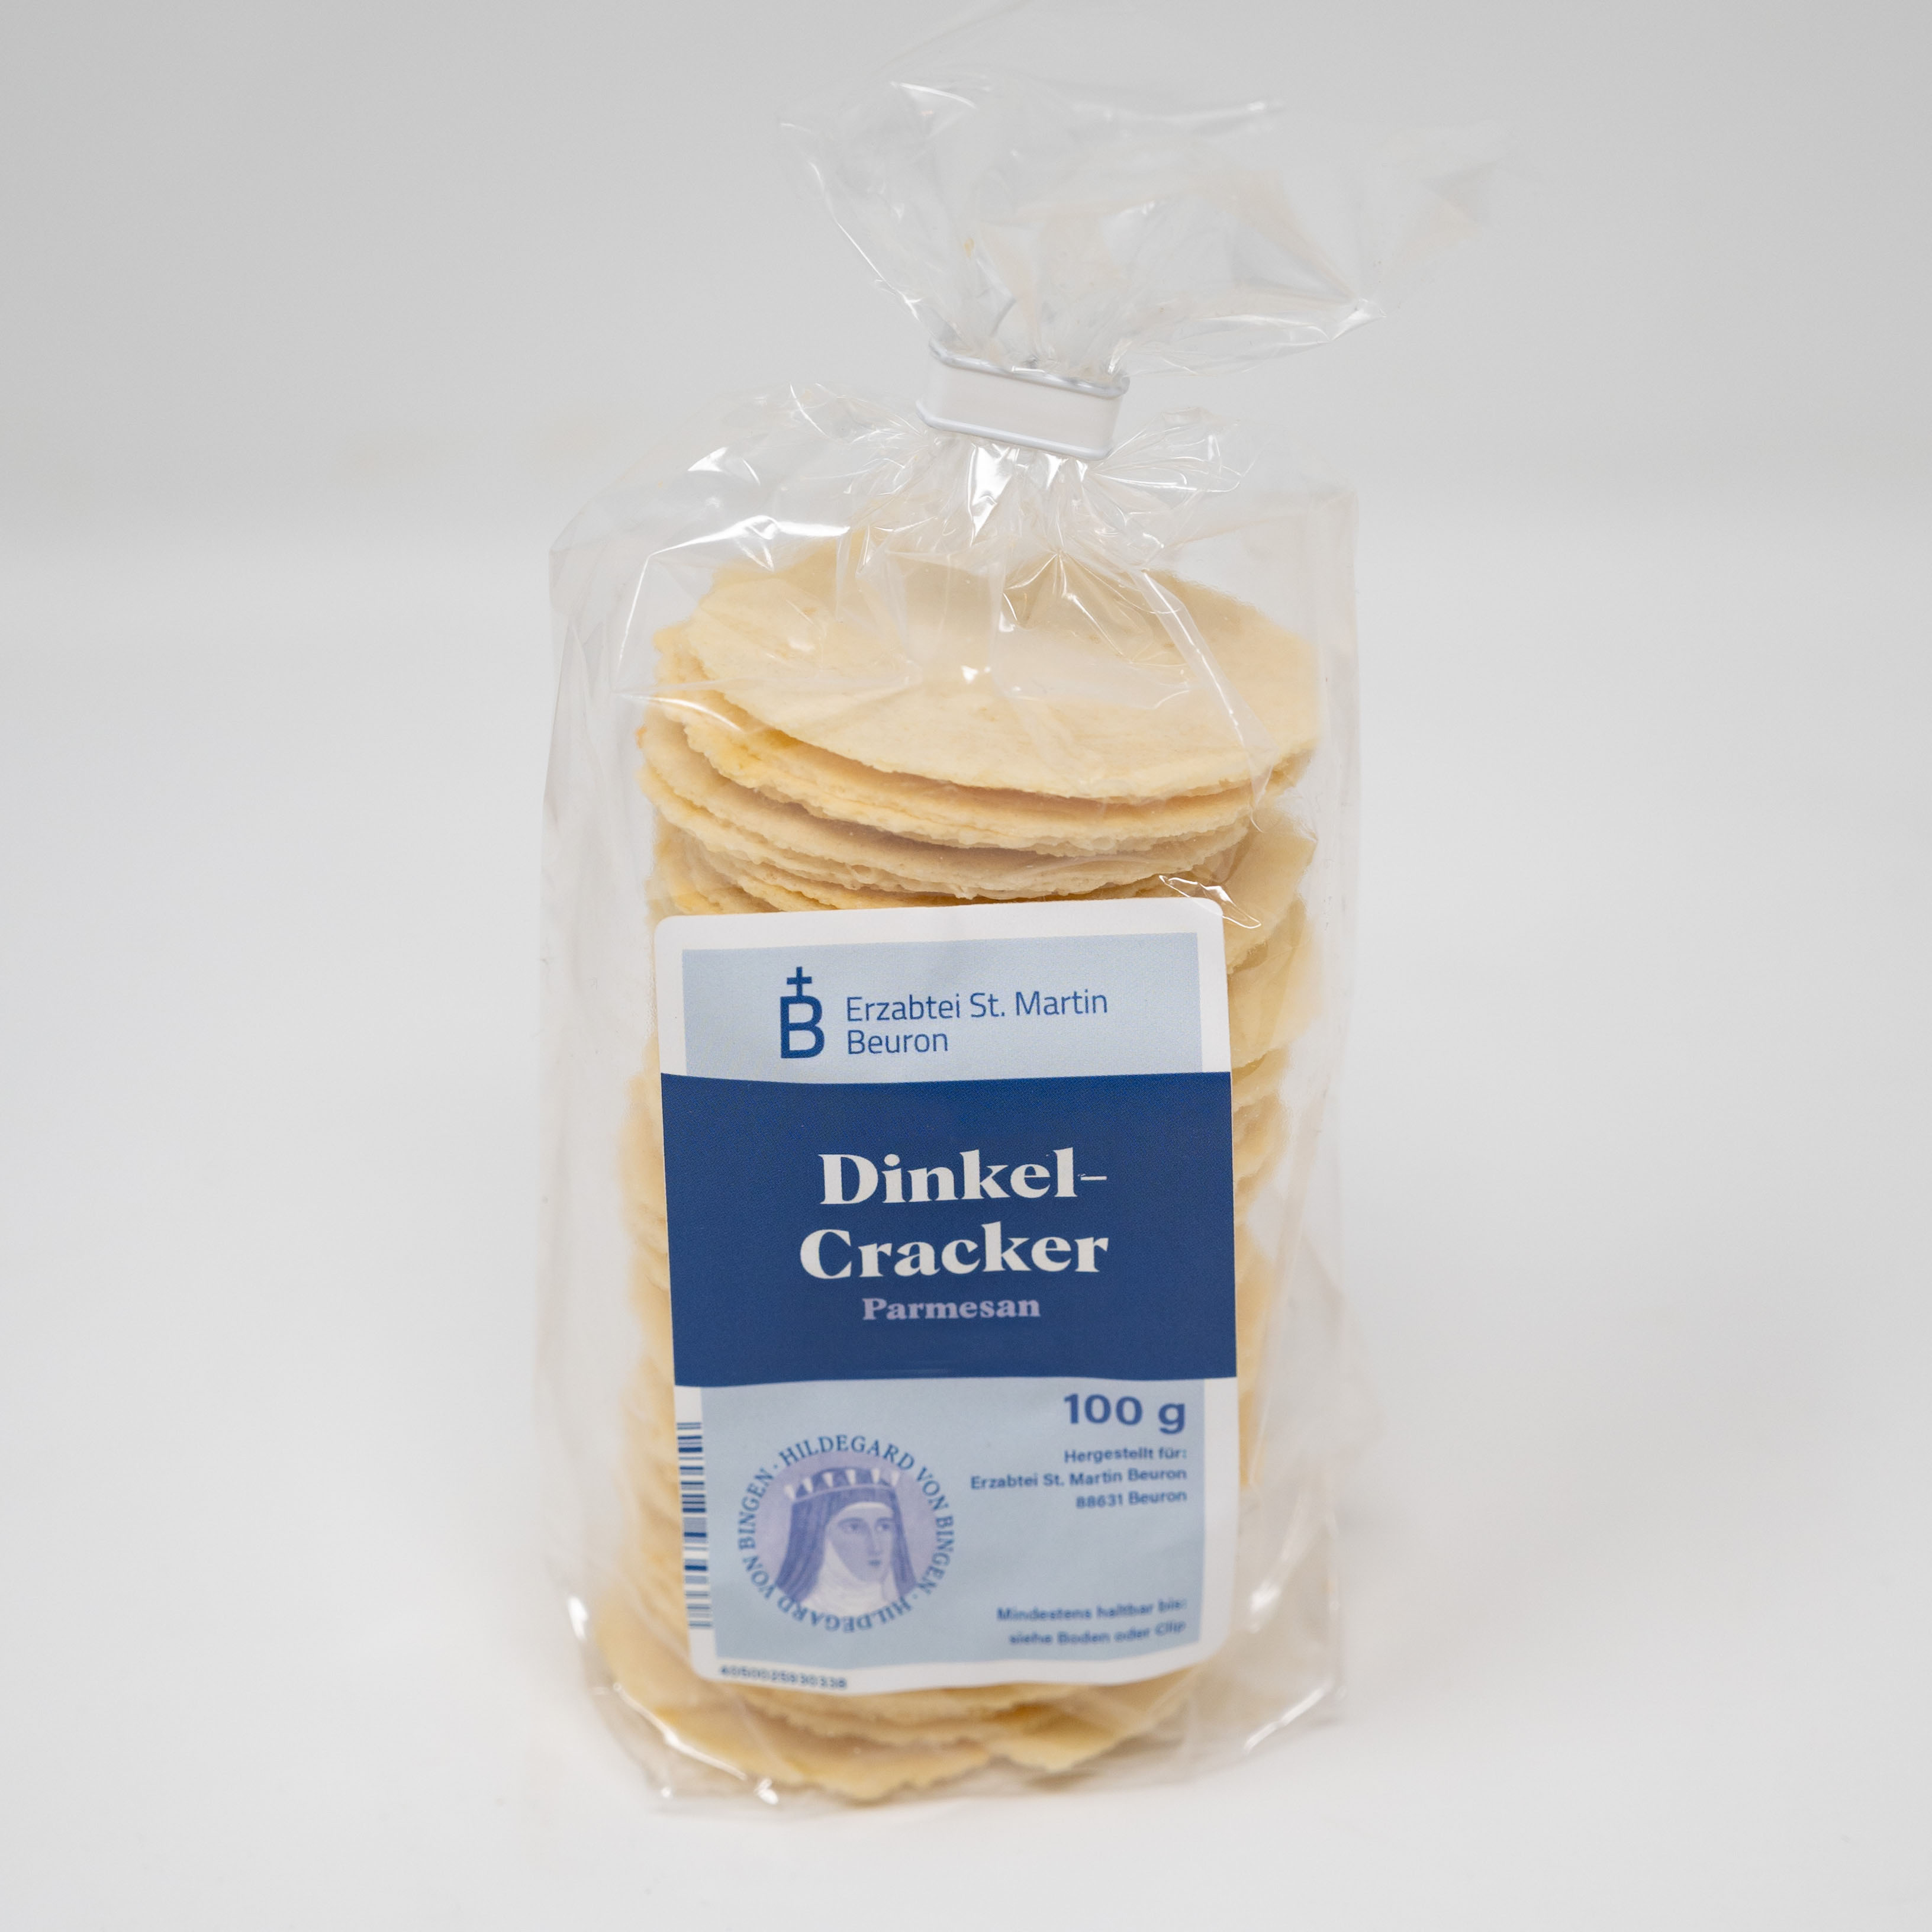 Dinkel-Cracker "Parmesan"